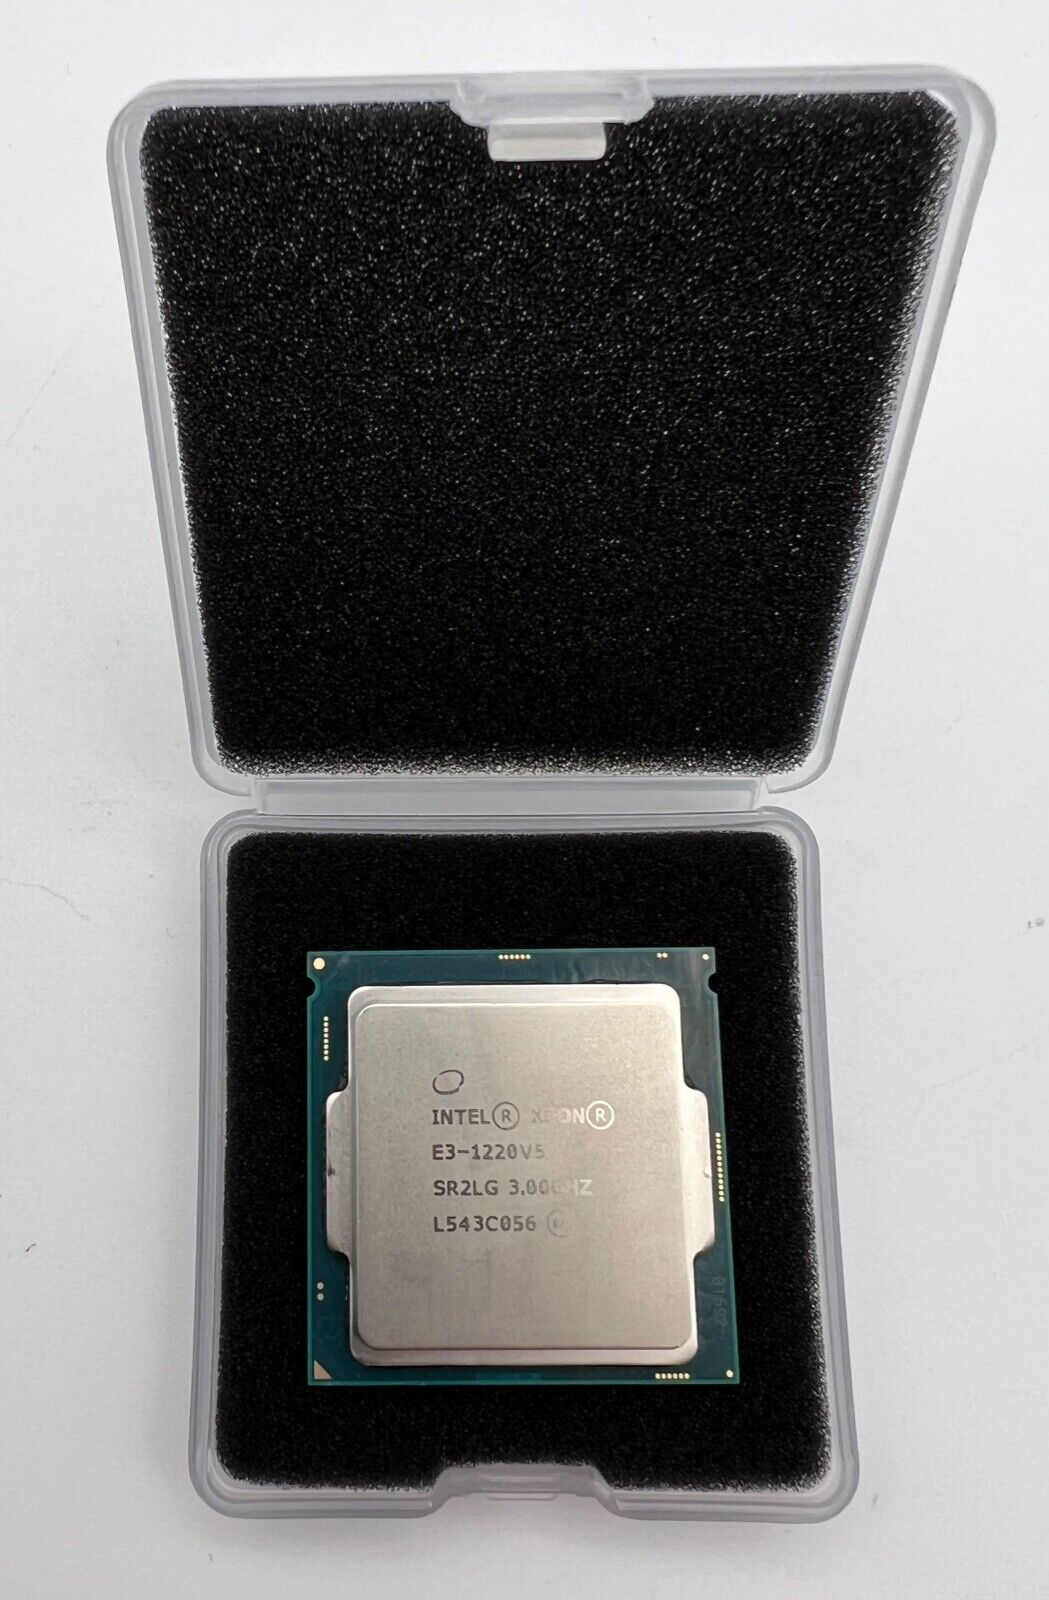 Intel Xeon E3-1220 V5 3.0 ghz CPU